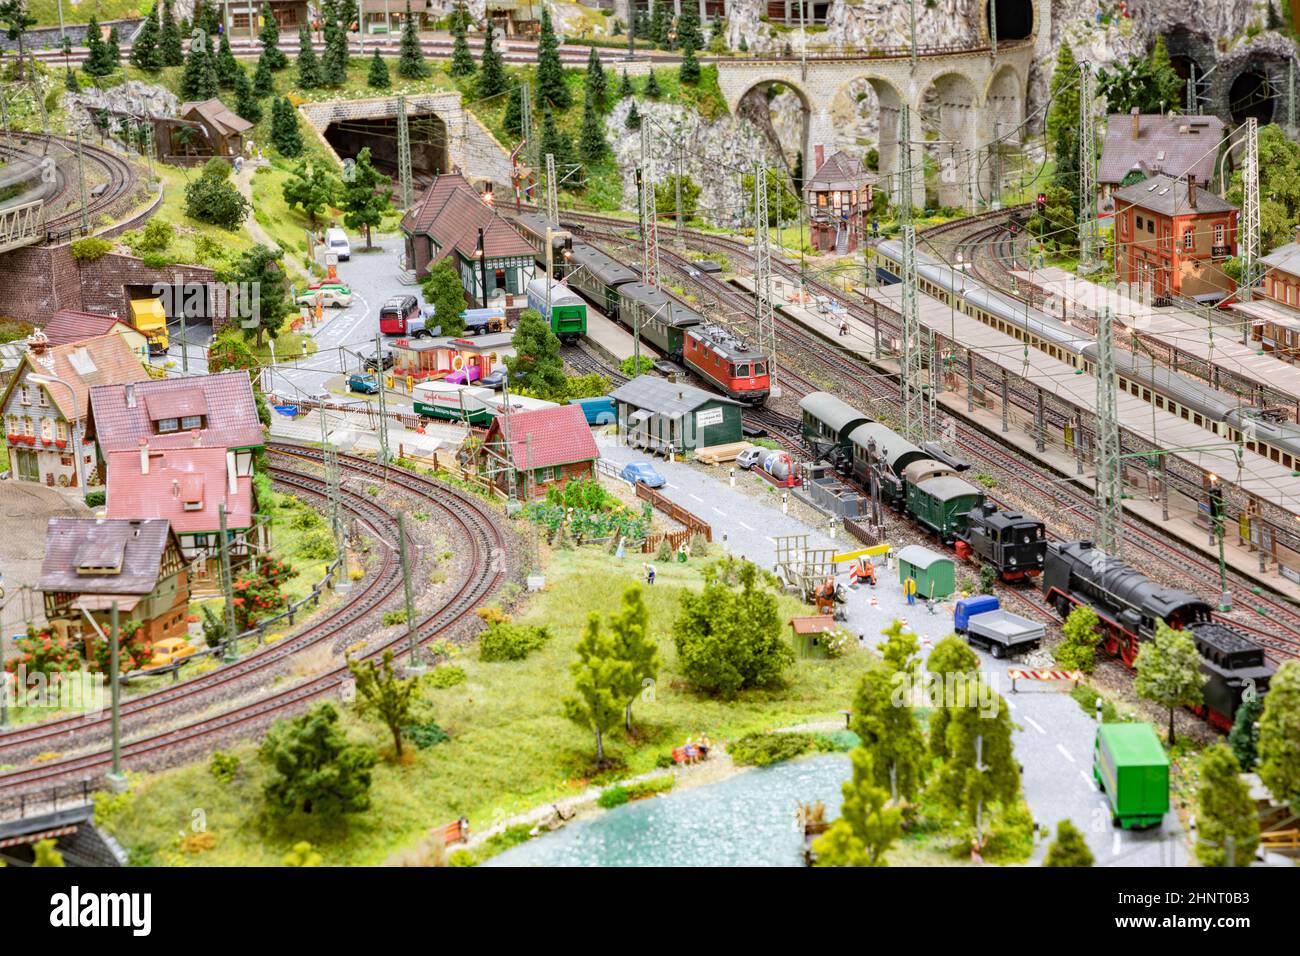 dettaglio di modello ferroviario con paesaggio, villaggi e treno operativo Foto Stock